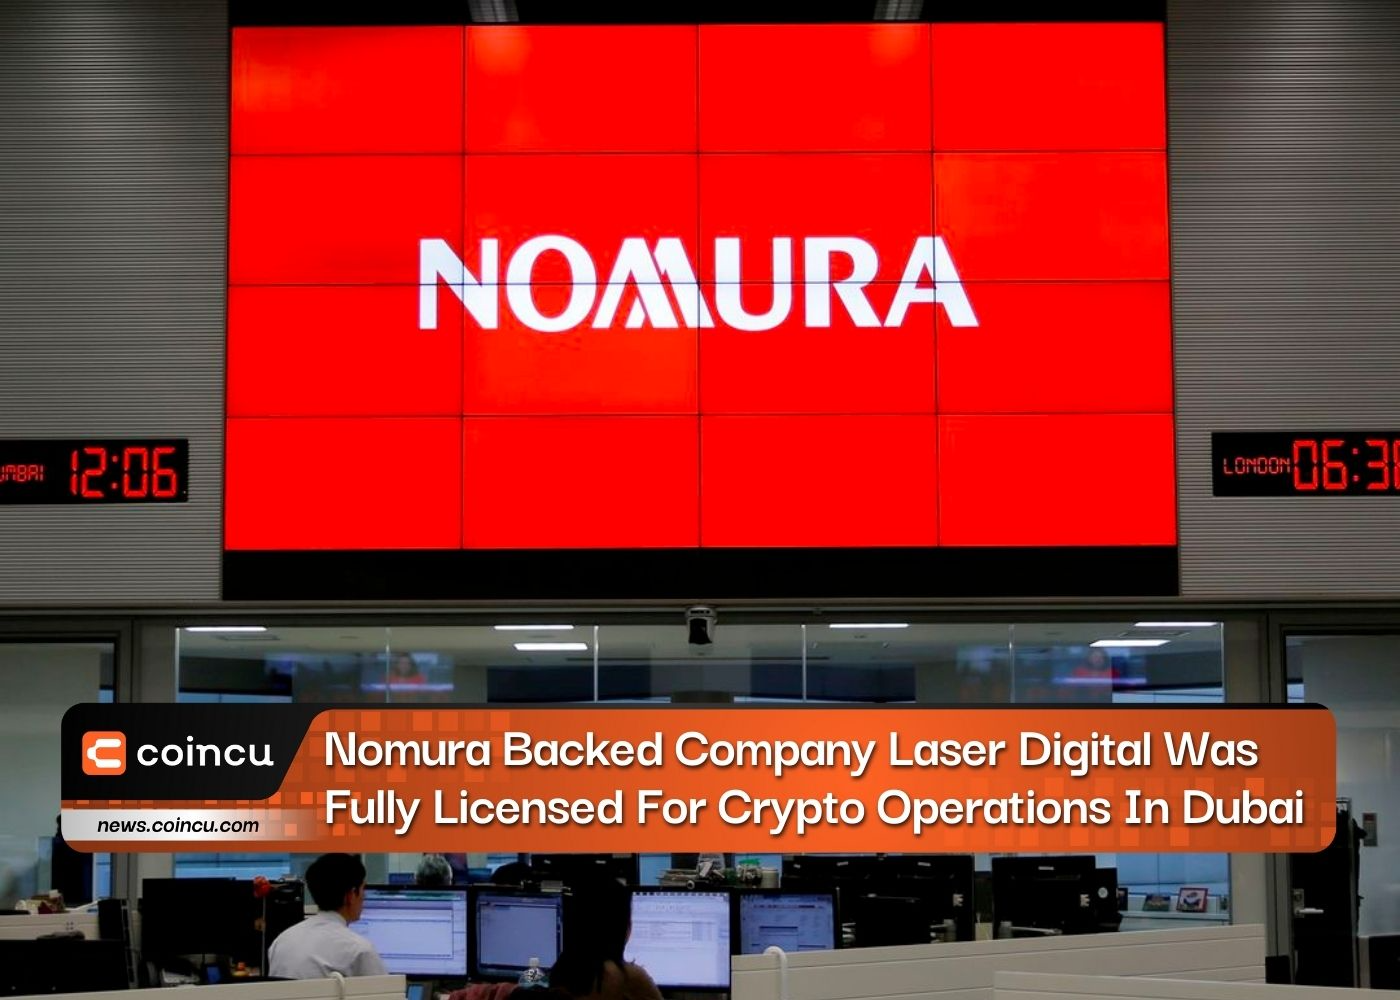 Nomura가 지원하는 회사인 Laser Digital이 두바이에서 암호화 작업을 위해 완전히 라이선스를 받았습니다.